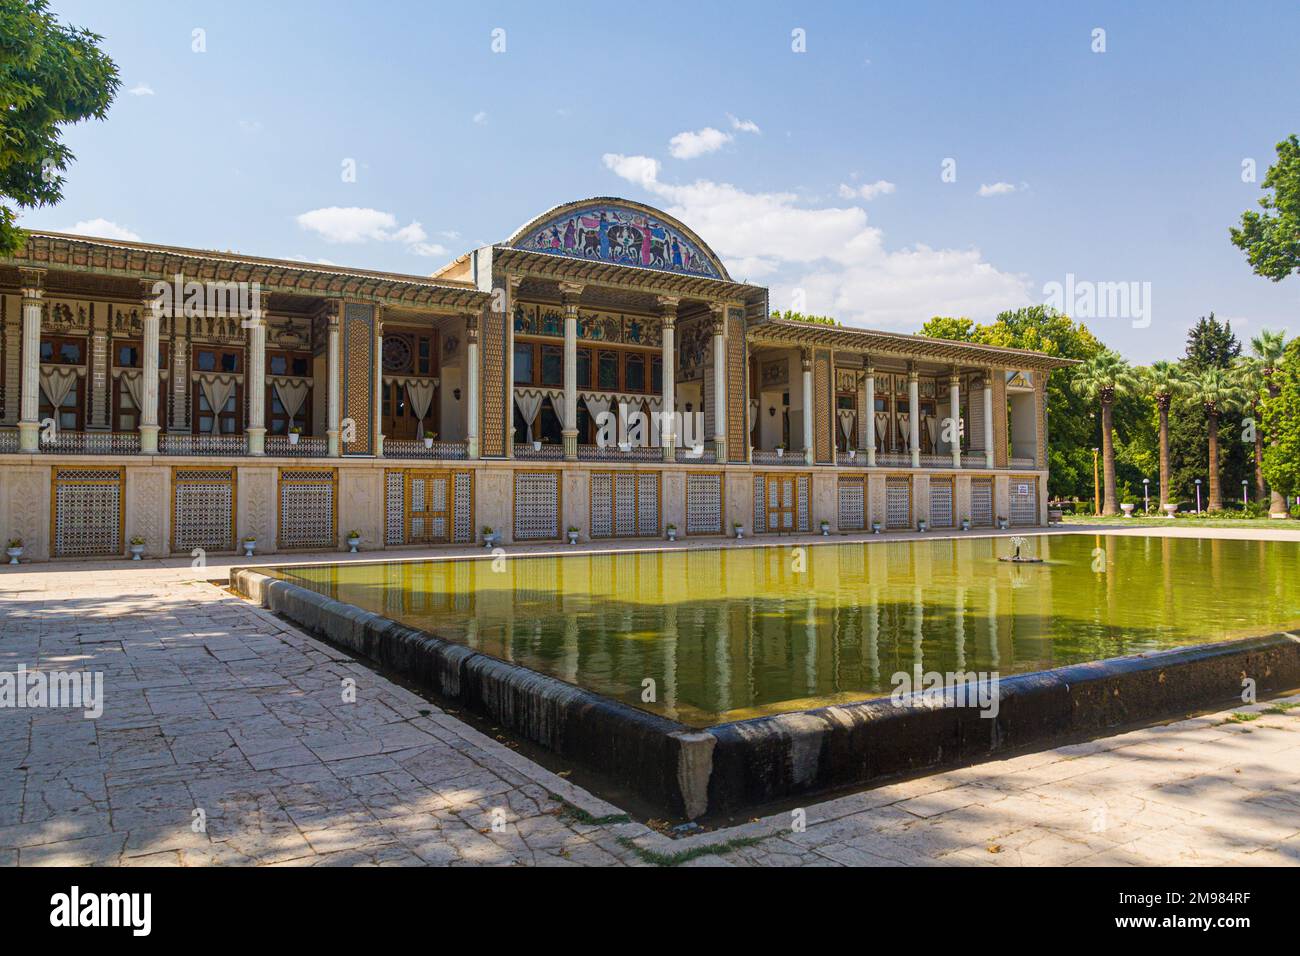 Royal Palace in Afif-Abad (Gulshan) garden in Shiraz, Iran Stock Photo